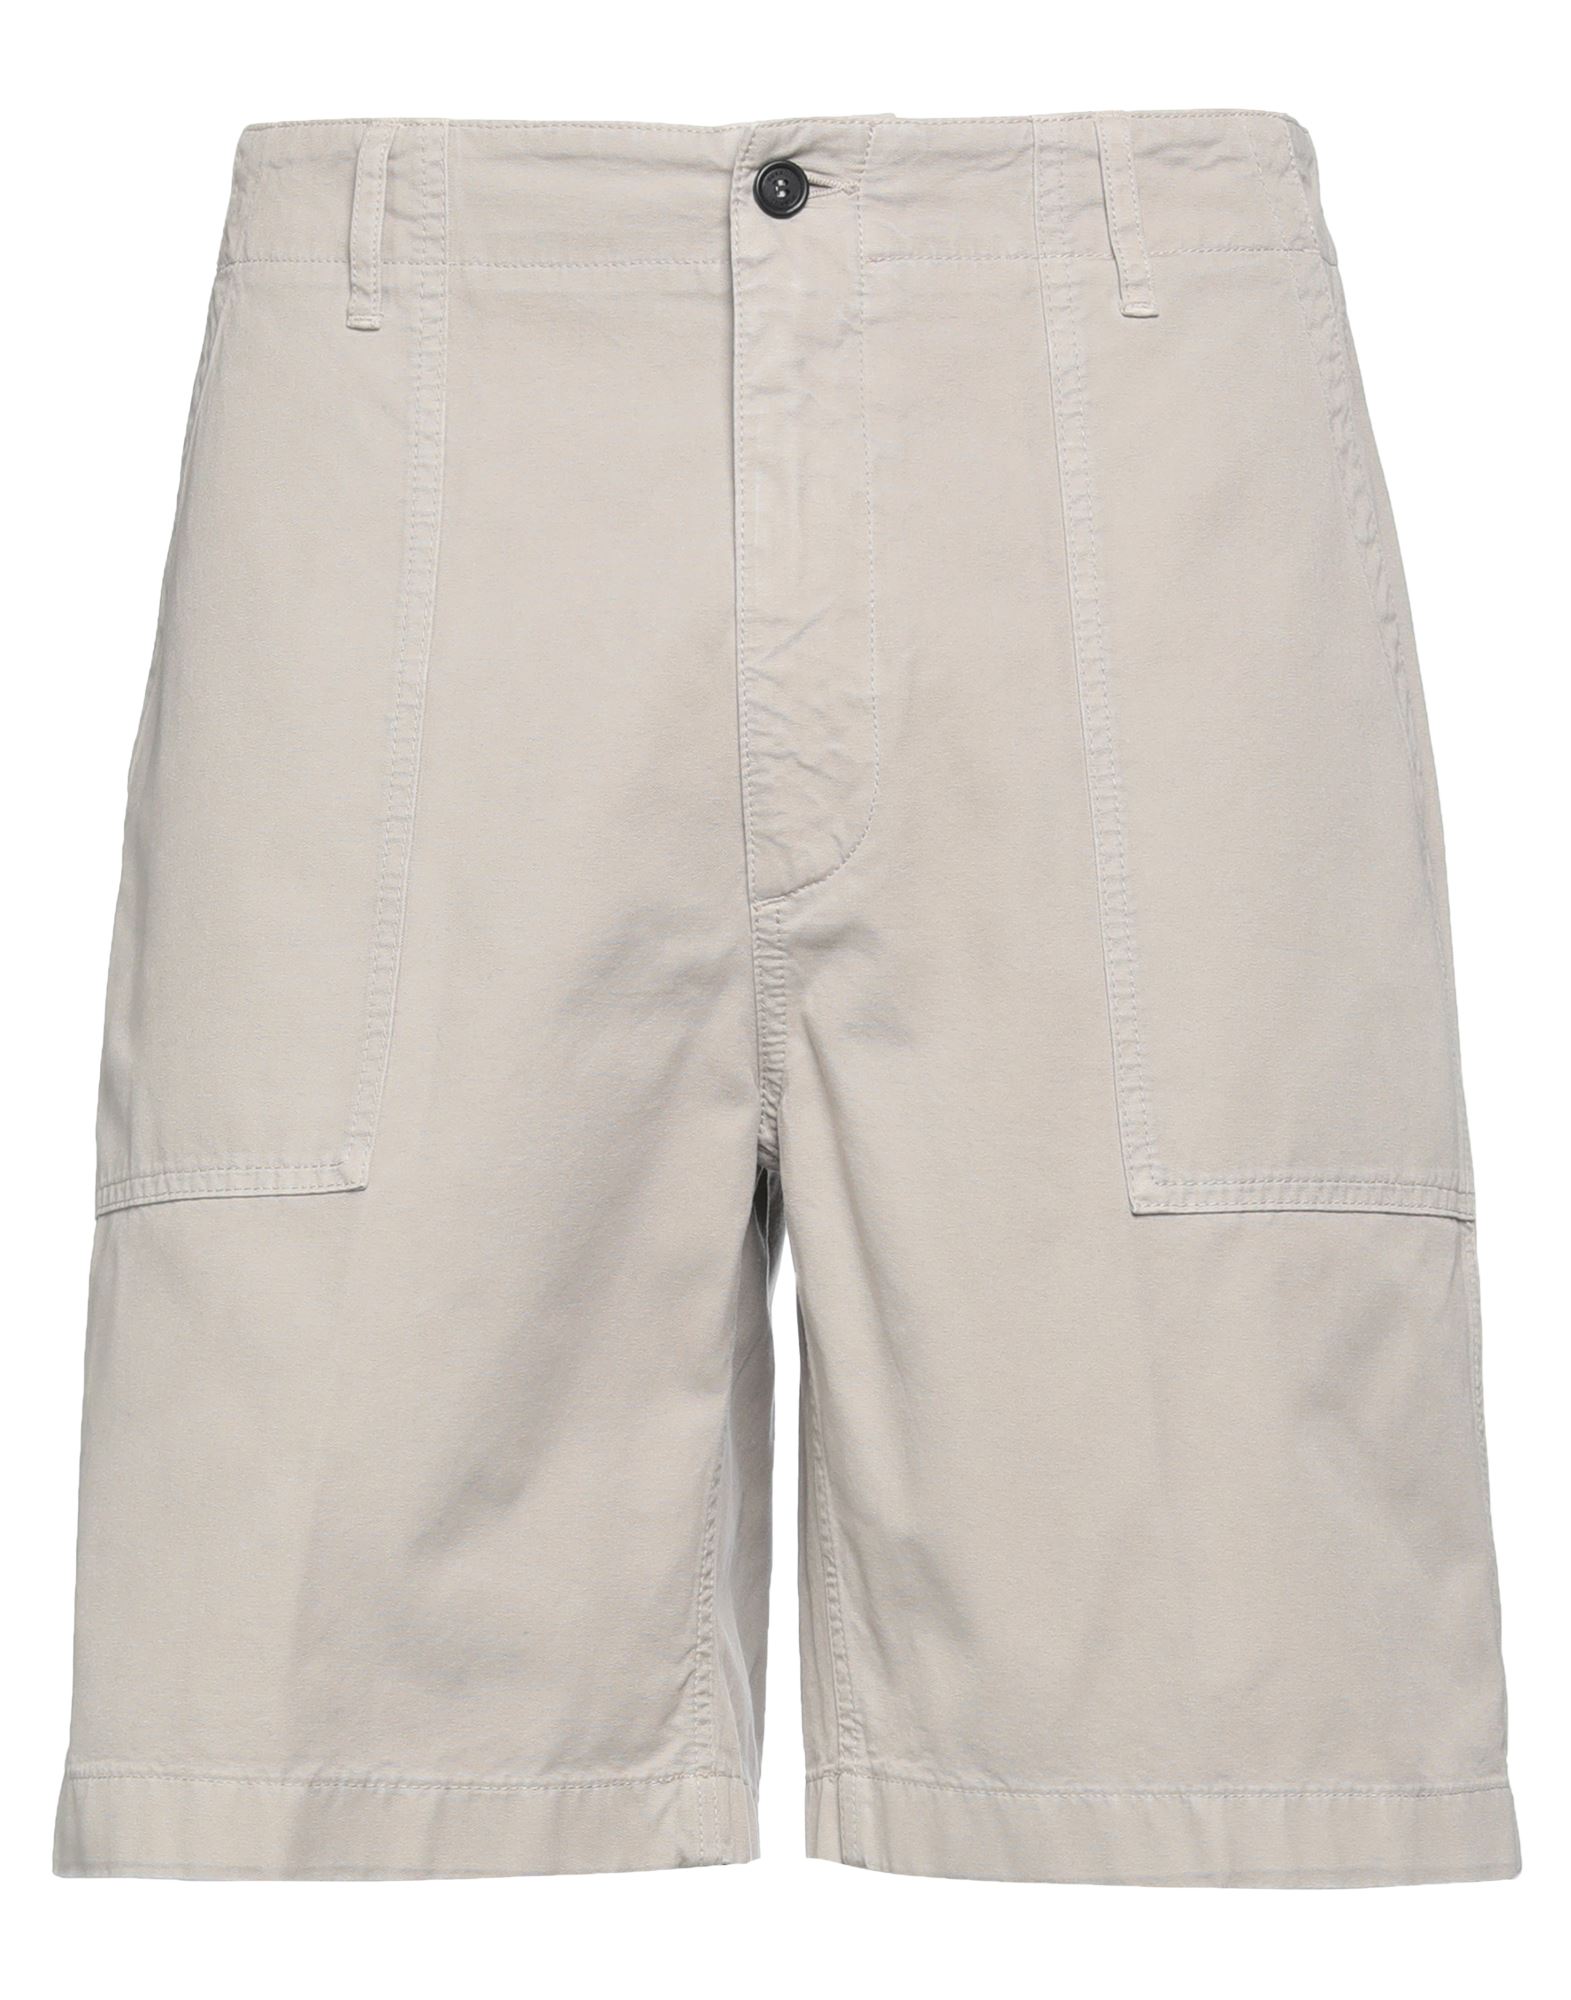 Dunhill Man Shorts & Bermuda Shorts Grey Size 38 Cotton